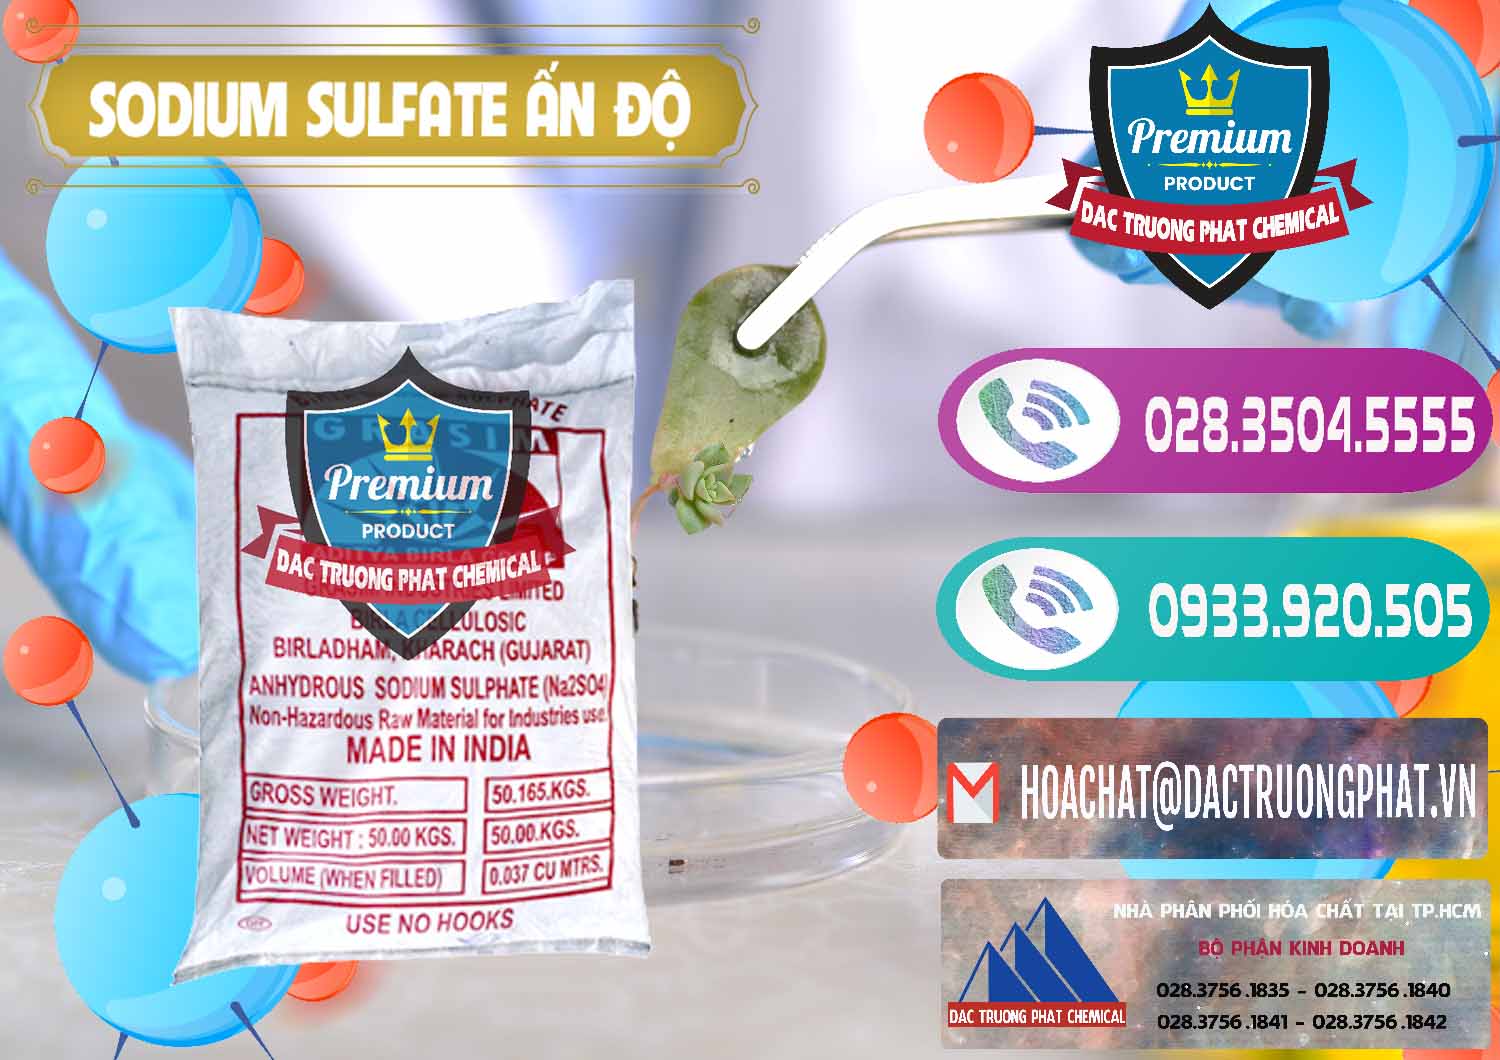 Đơn vị chuyên bán - cung ứng Sodium Sulphate - Muối Sunfat Na2SO4 Aditya Birla Grasim Ấn Độ India - 0462 - Chuyên phân phối và cung cấp hóa chất tại TP.HCM - hoachatxulynuoc.com